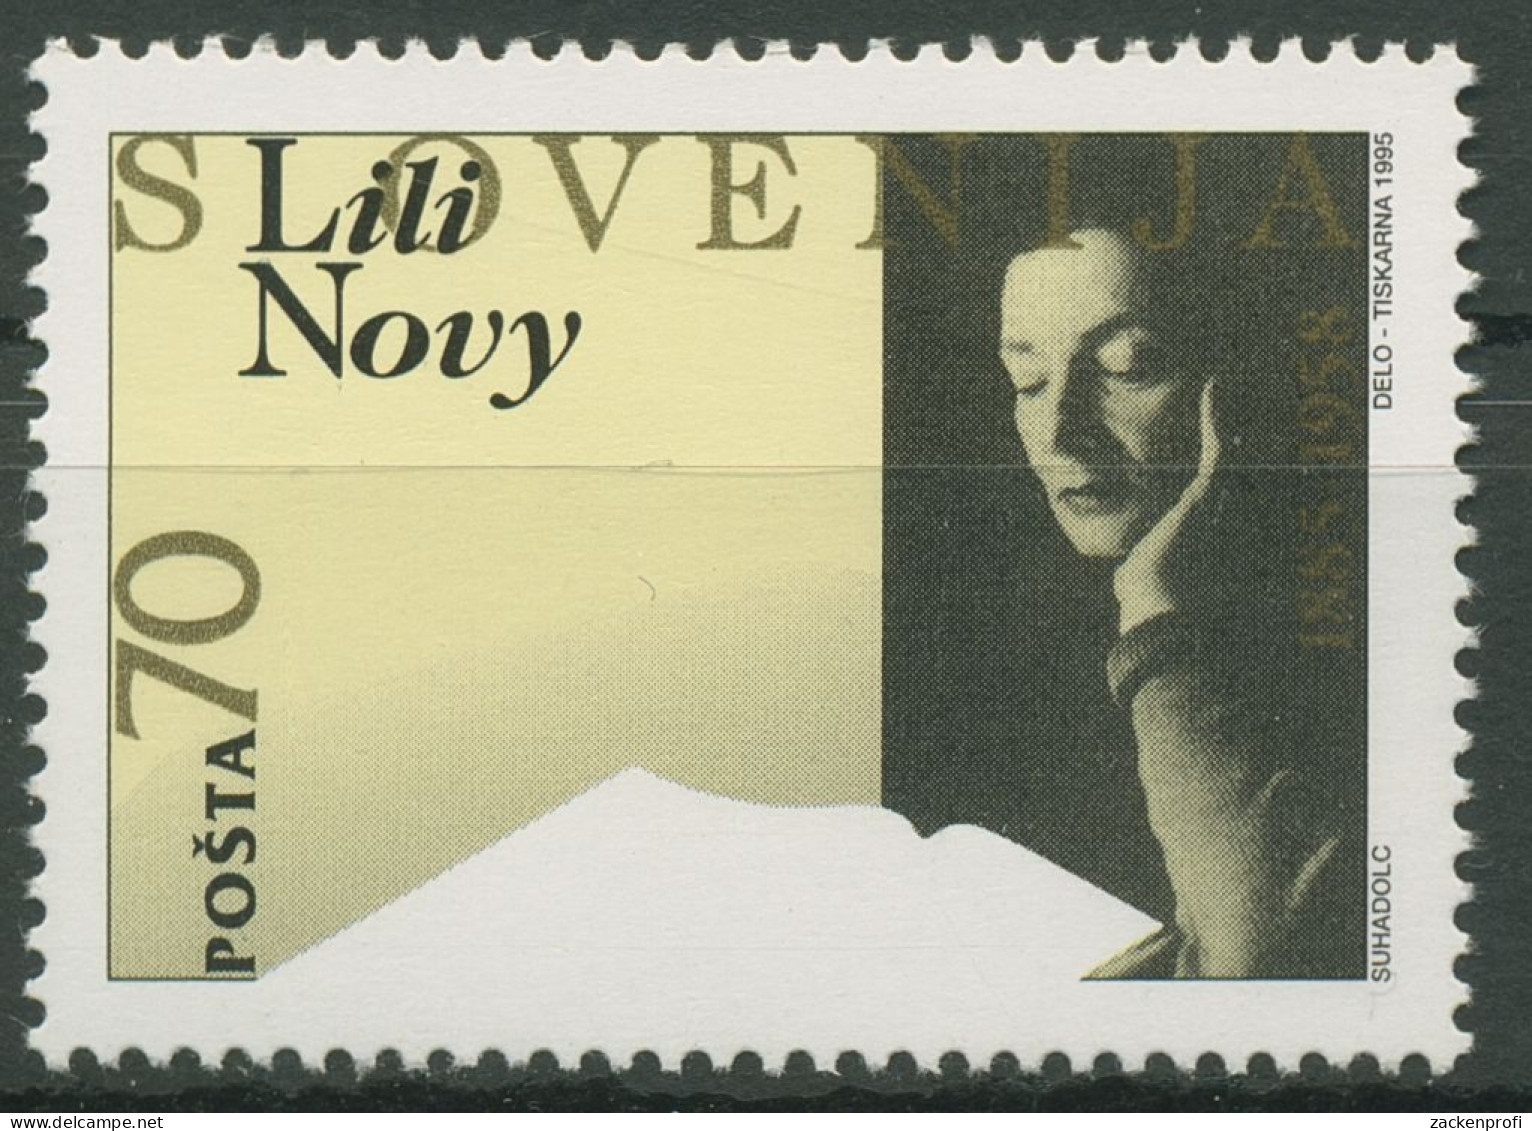 Slowenien 1995 Dichterin Lili Novy 105 Postfrisch - Slovénie